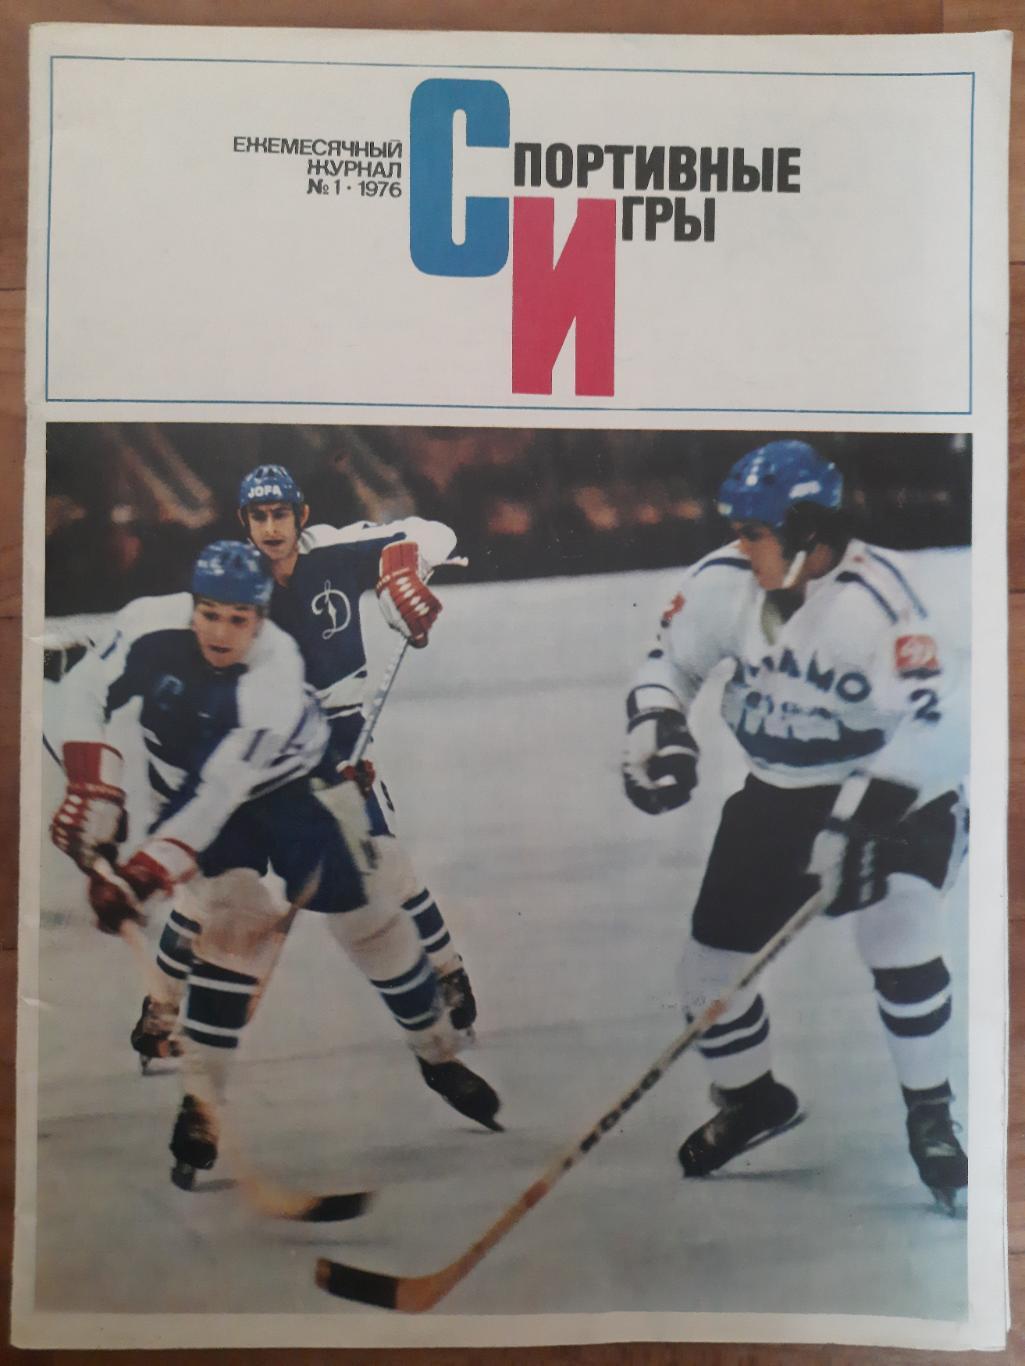 Спортивные игры №1,1976